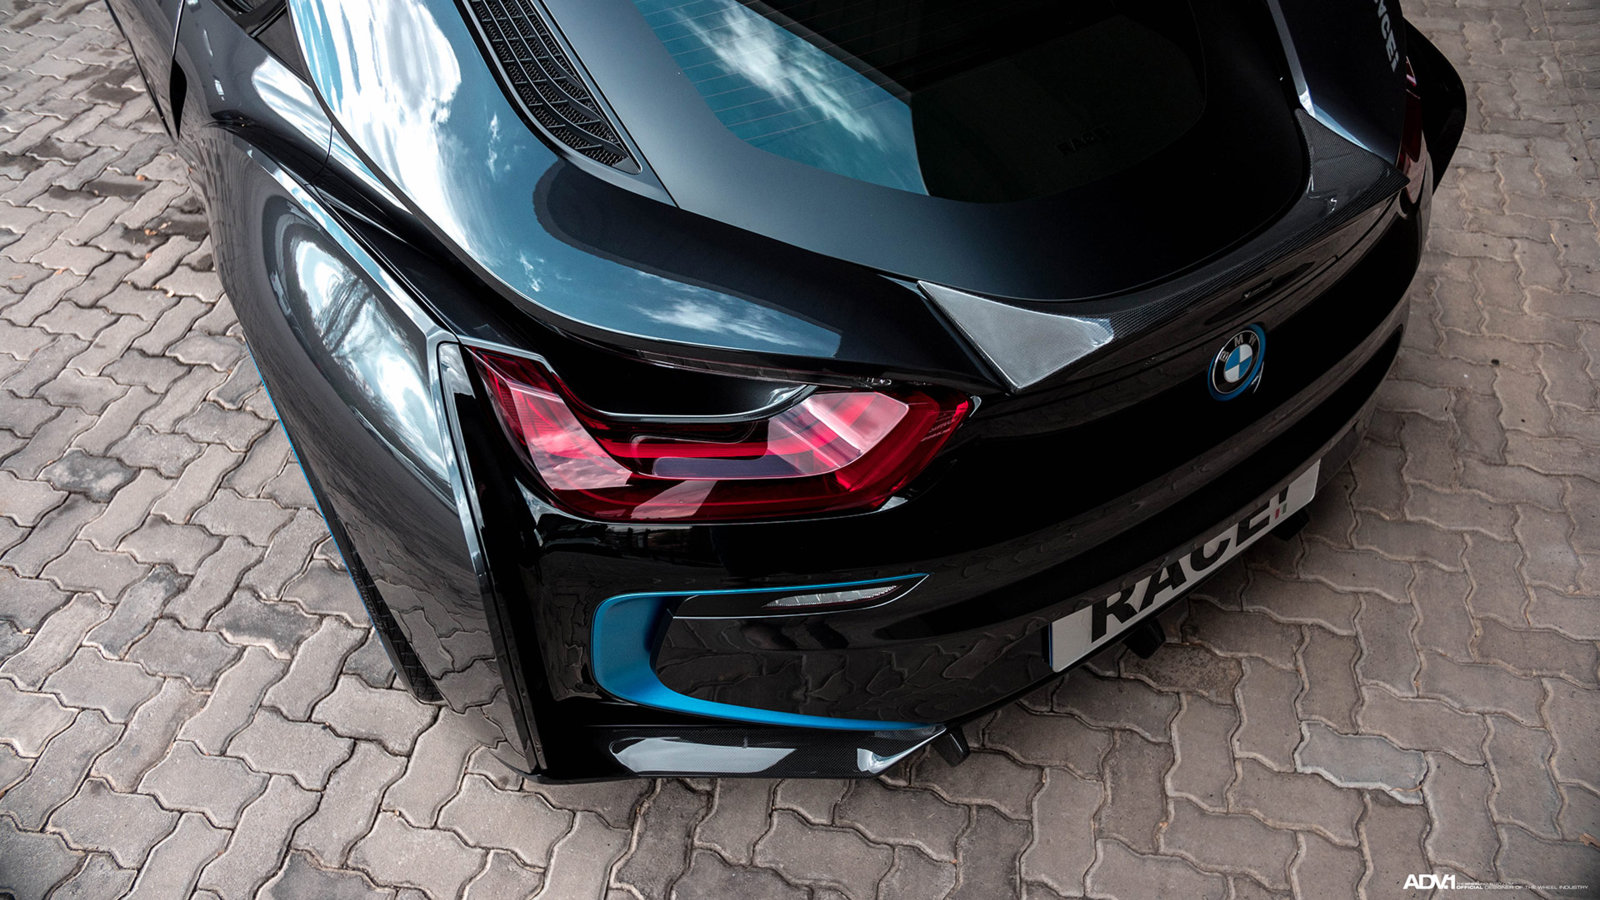 bmw-i8-custom-wheels-blue-lips-electric-car-rims-b.jpg